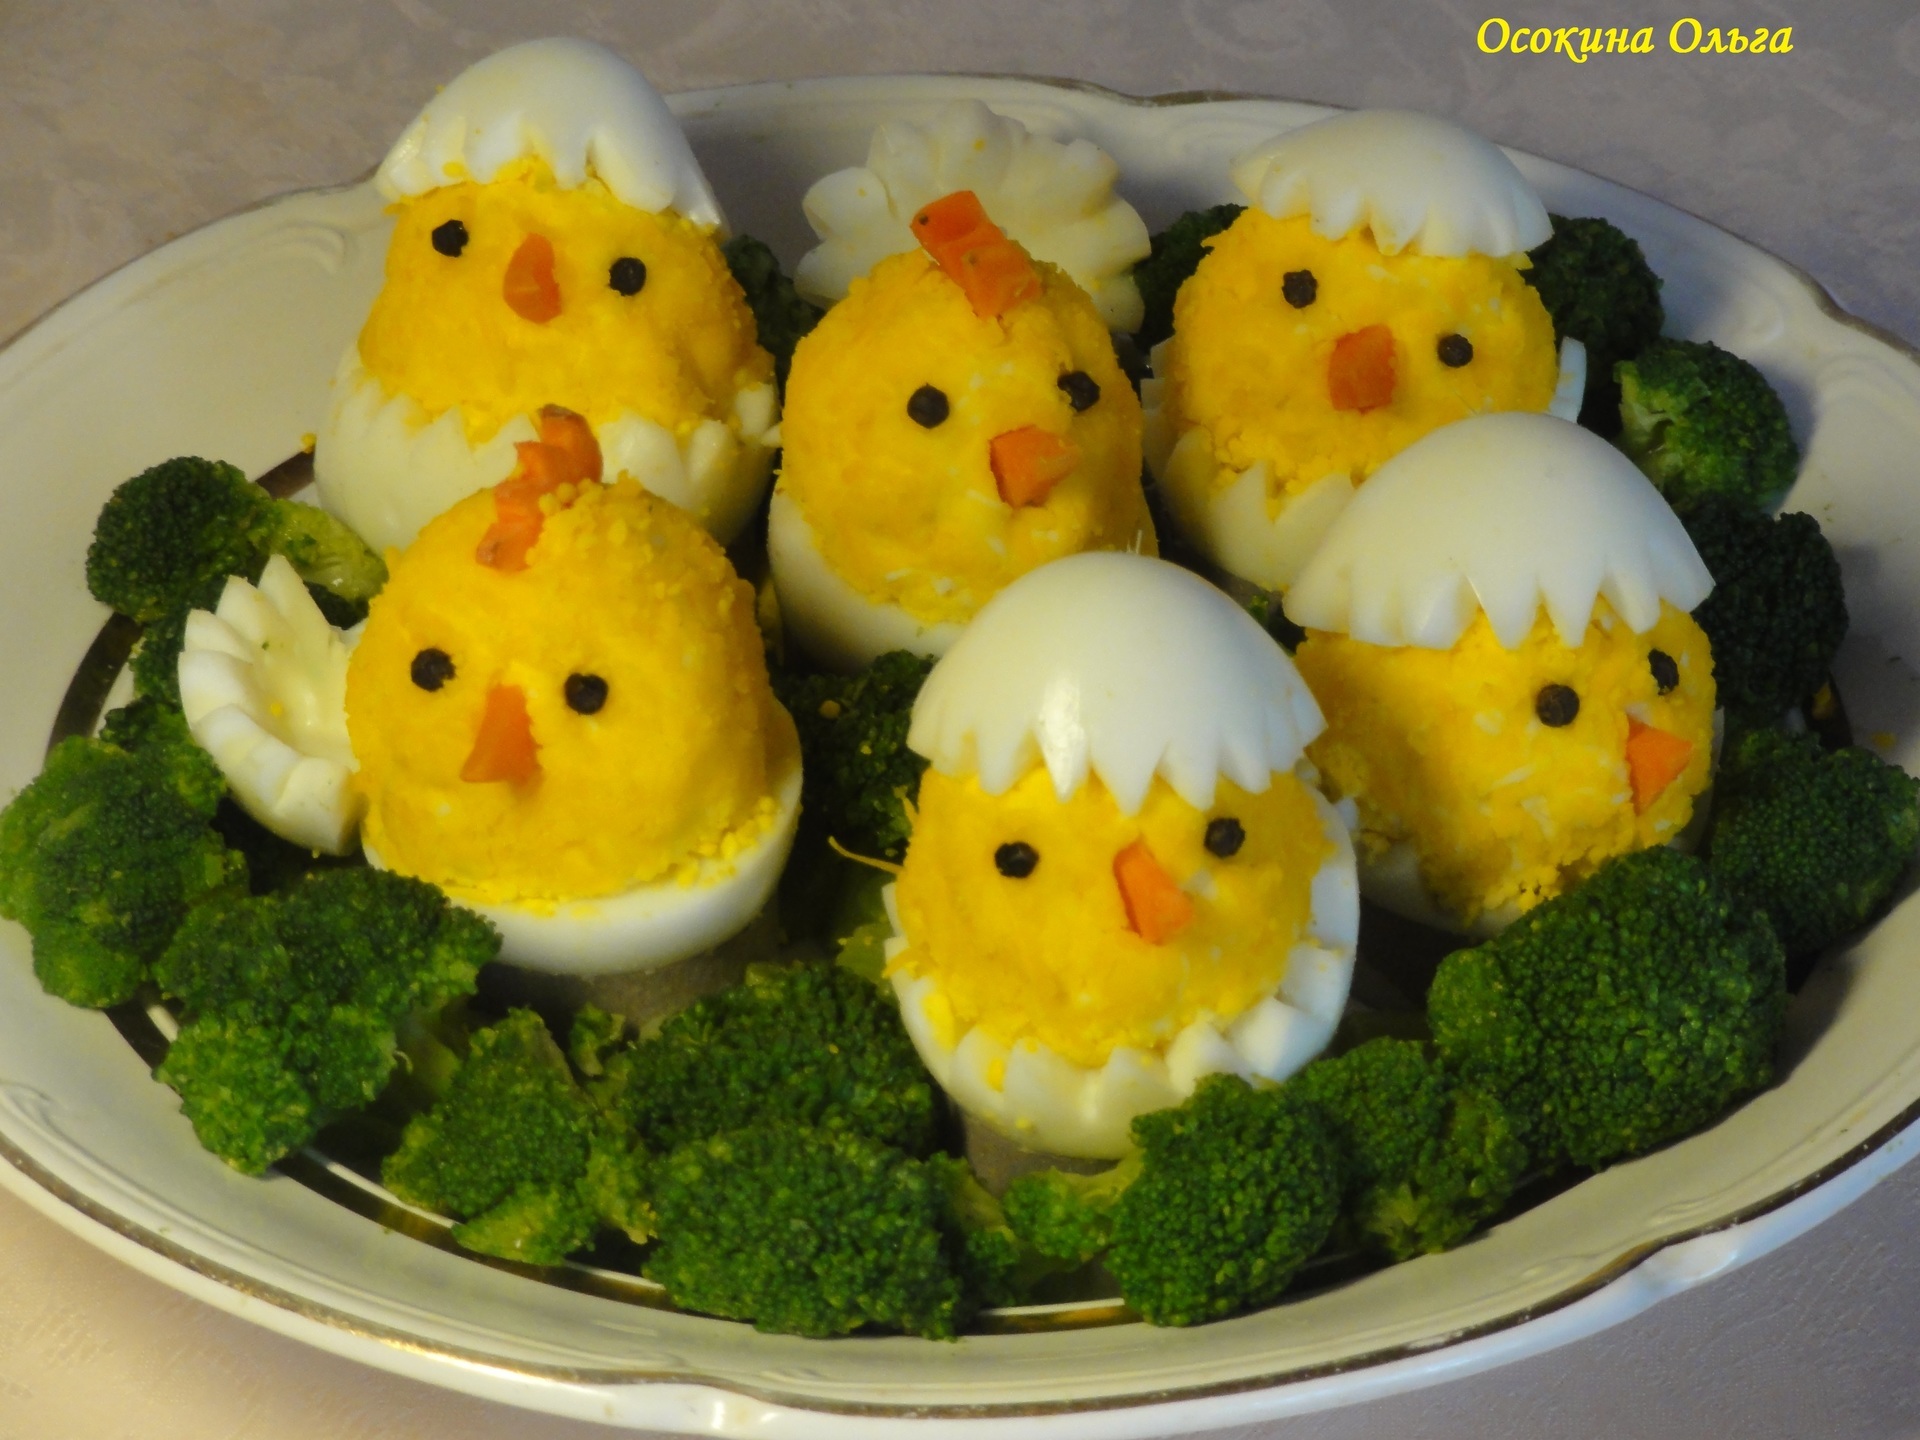 Детские рецепты с курицей. Фаршированные яйца цыплята. Украшения из вареных яиц. Украшение блюд из яиц. Фигурки из яиц для украшения стола.